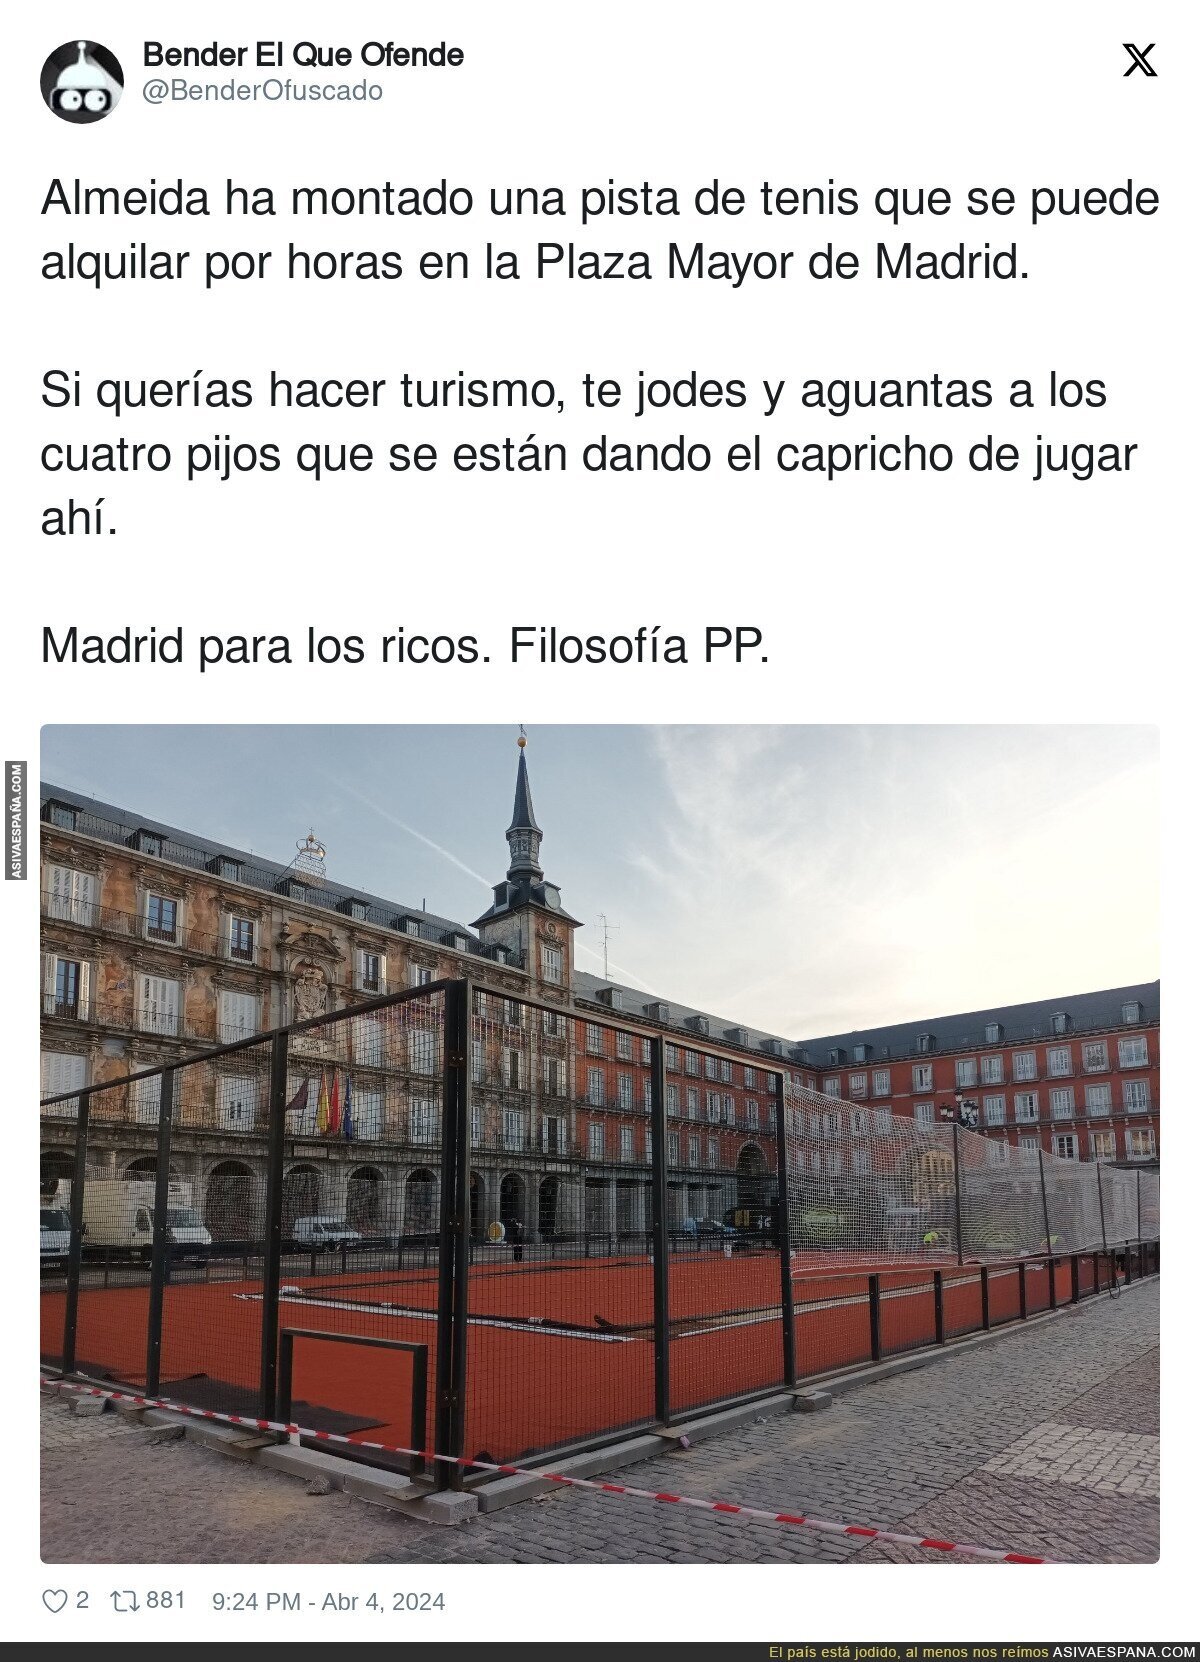 Bienvenidos al Madrid de la derecha